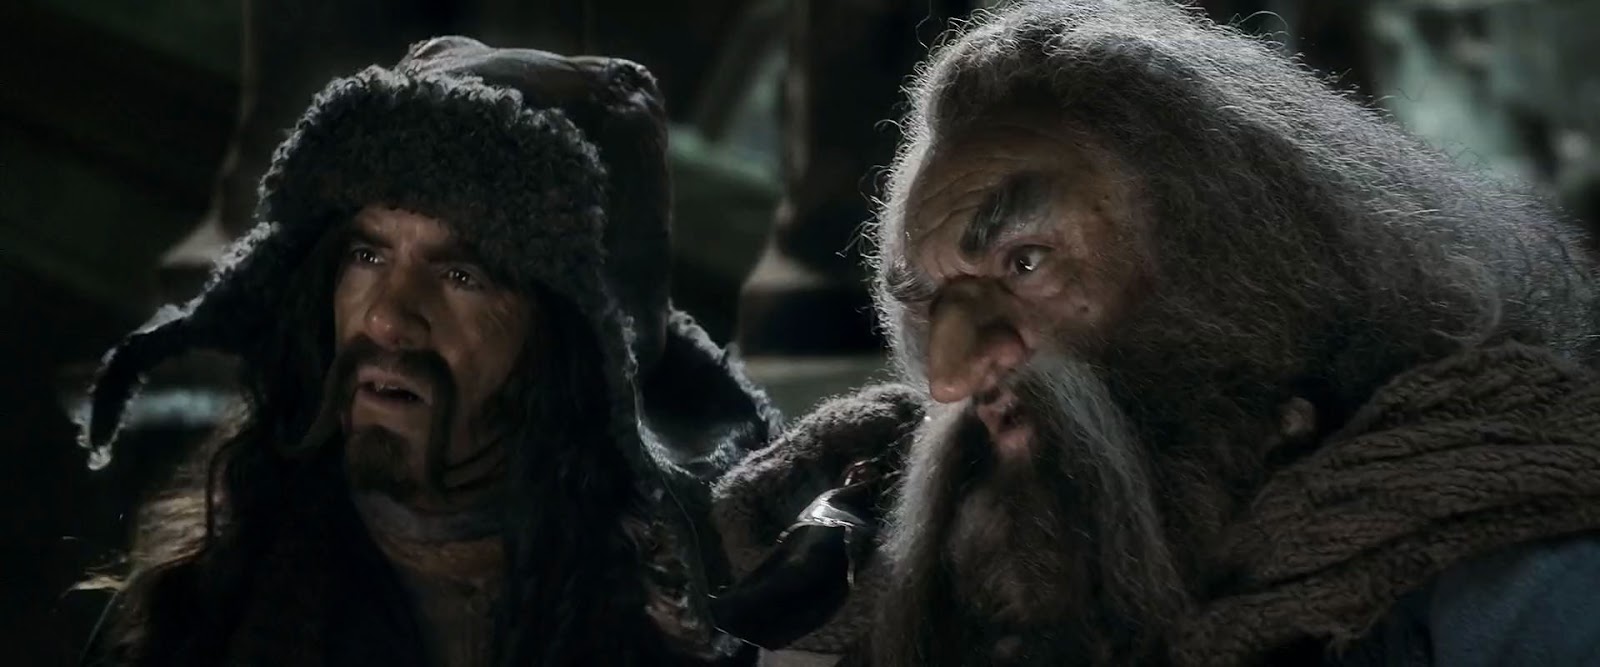 El Hobbit 3 (2014) Extendida HD 1080p Latino 